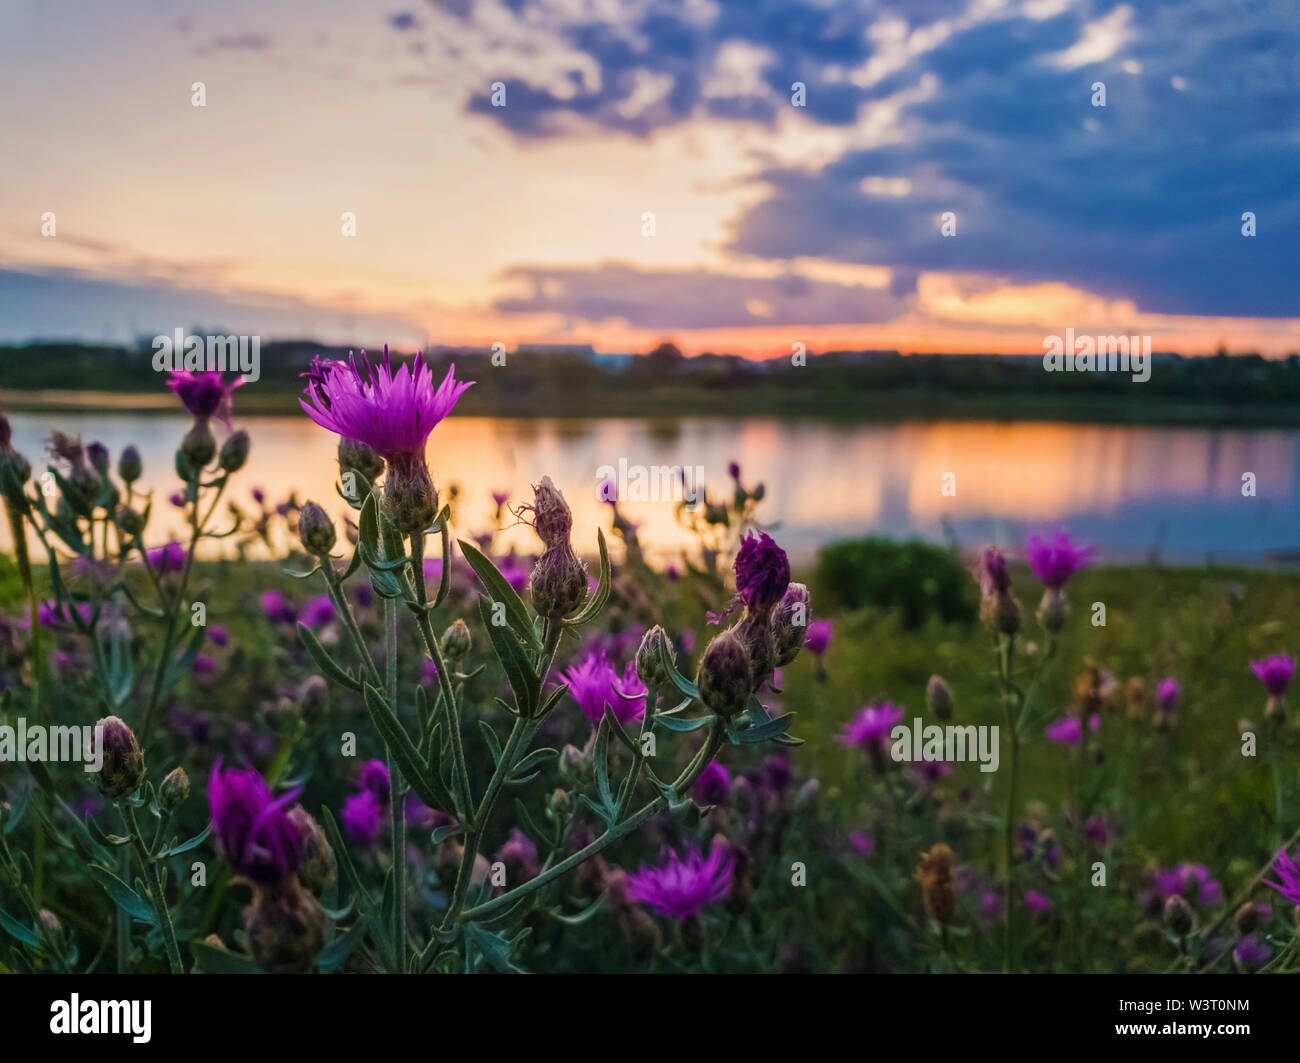 Close up selvaggio, viola fiori di arbusti in fiore nel prato vicino al lago su sfondo al tramonto in una calma sera d'estate. Foto Stock